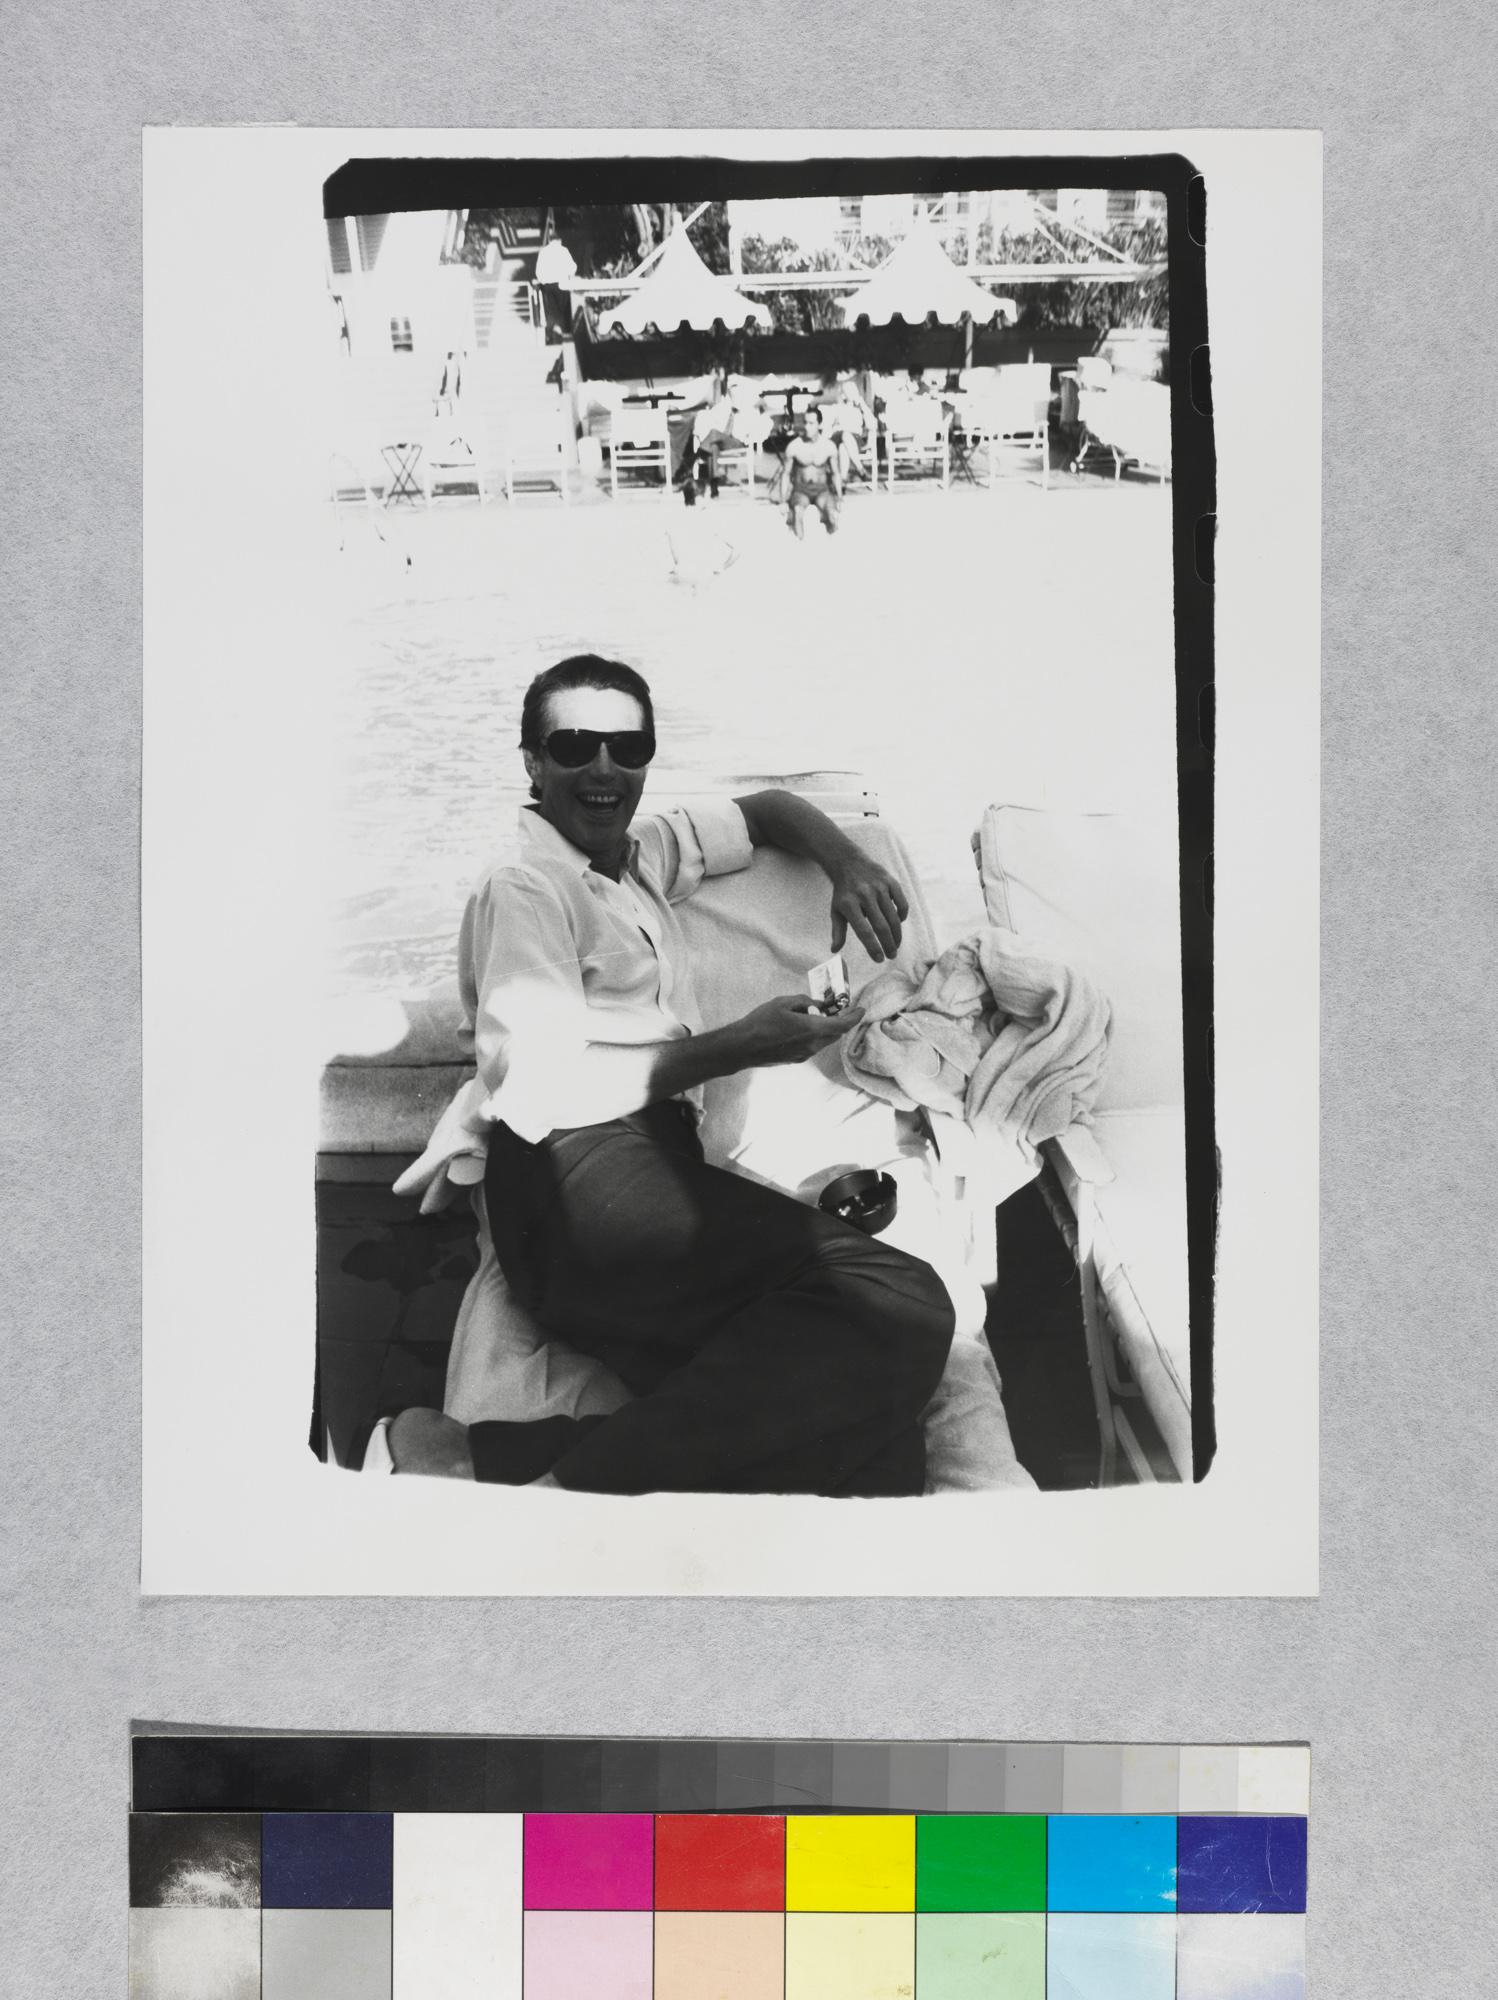 Gelatinesilberdruck von Halston Poolside im Beverly Hills Hotel mit Gelatinesilberdruck von Andy Warh (Pop-Art), Photograph, von Andy Warhol